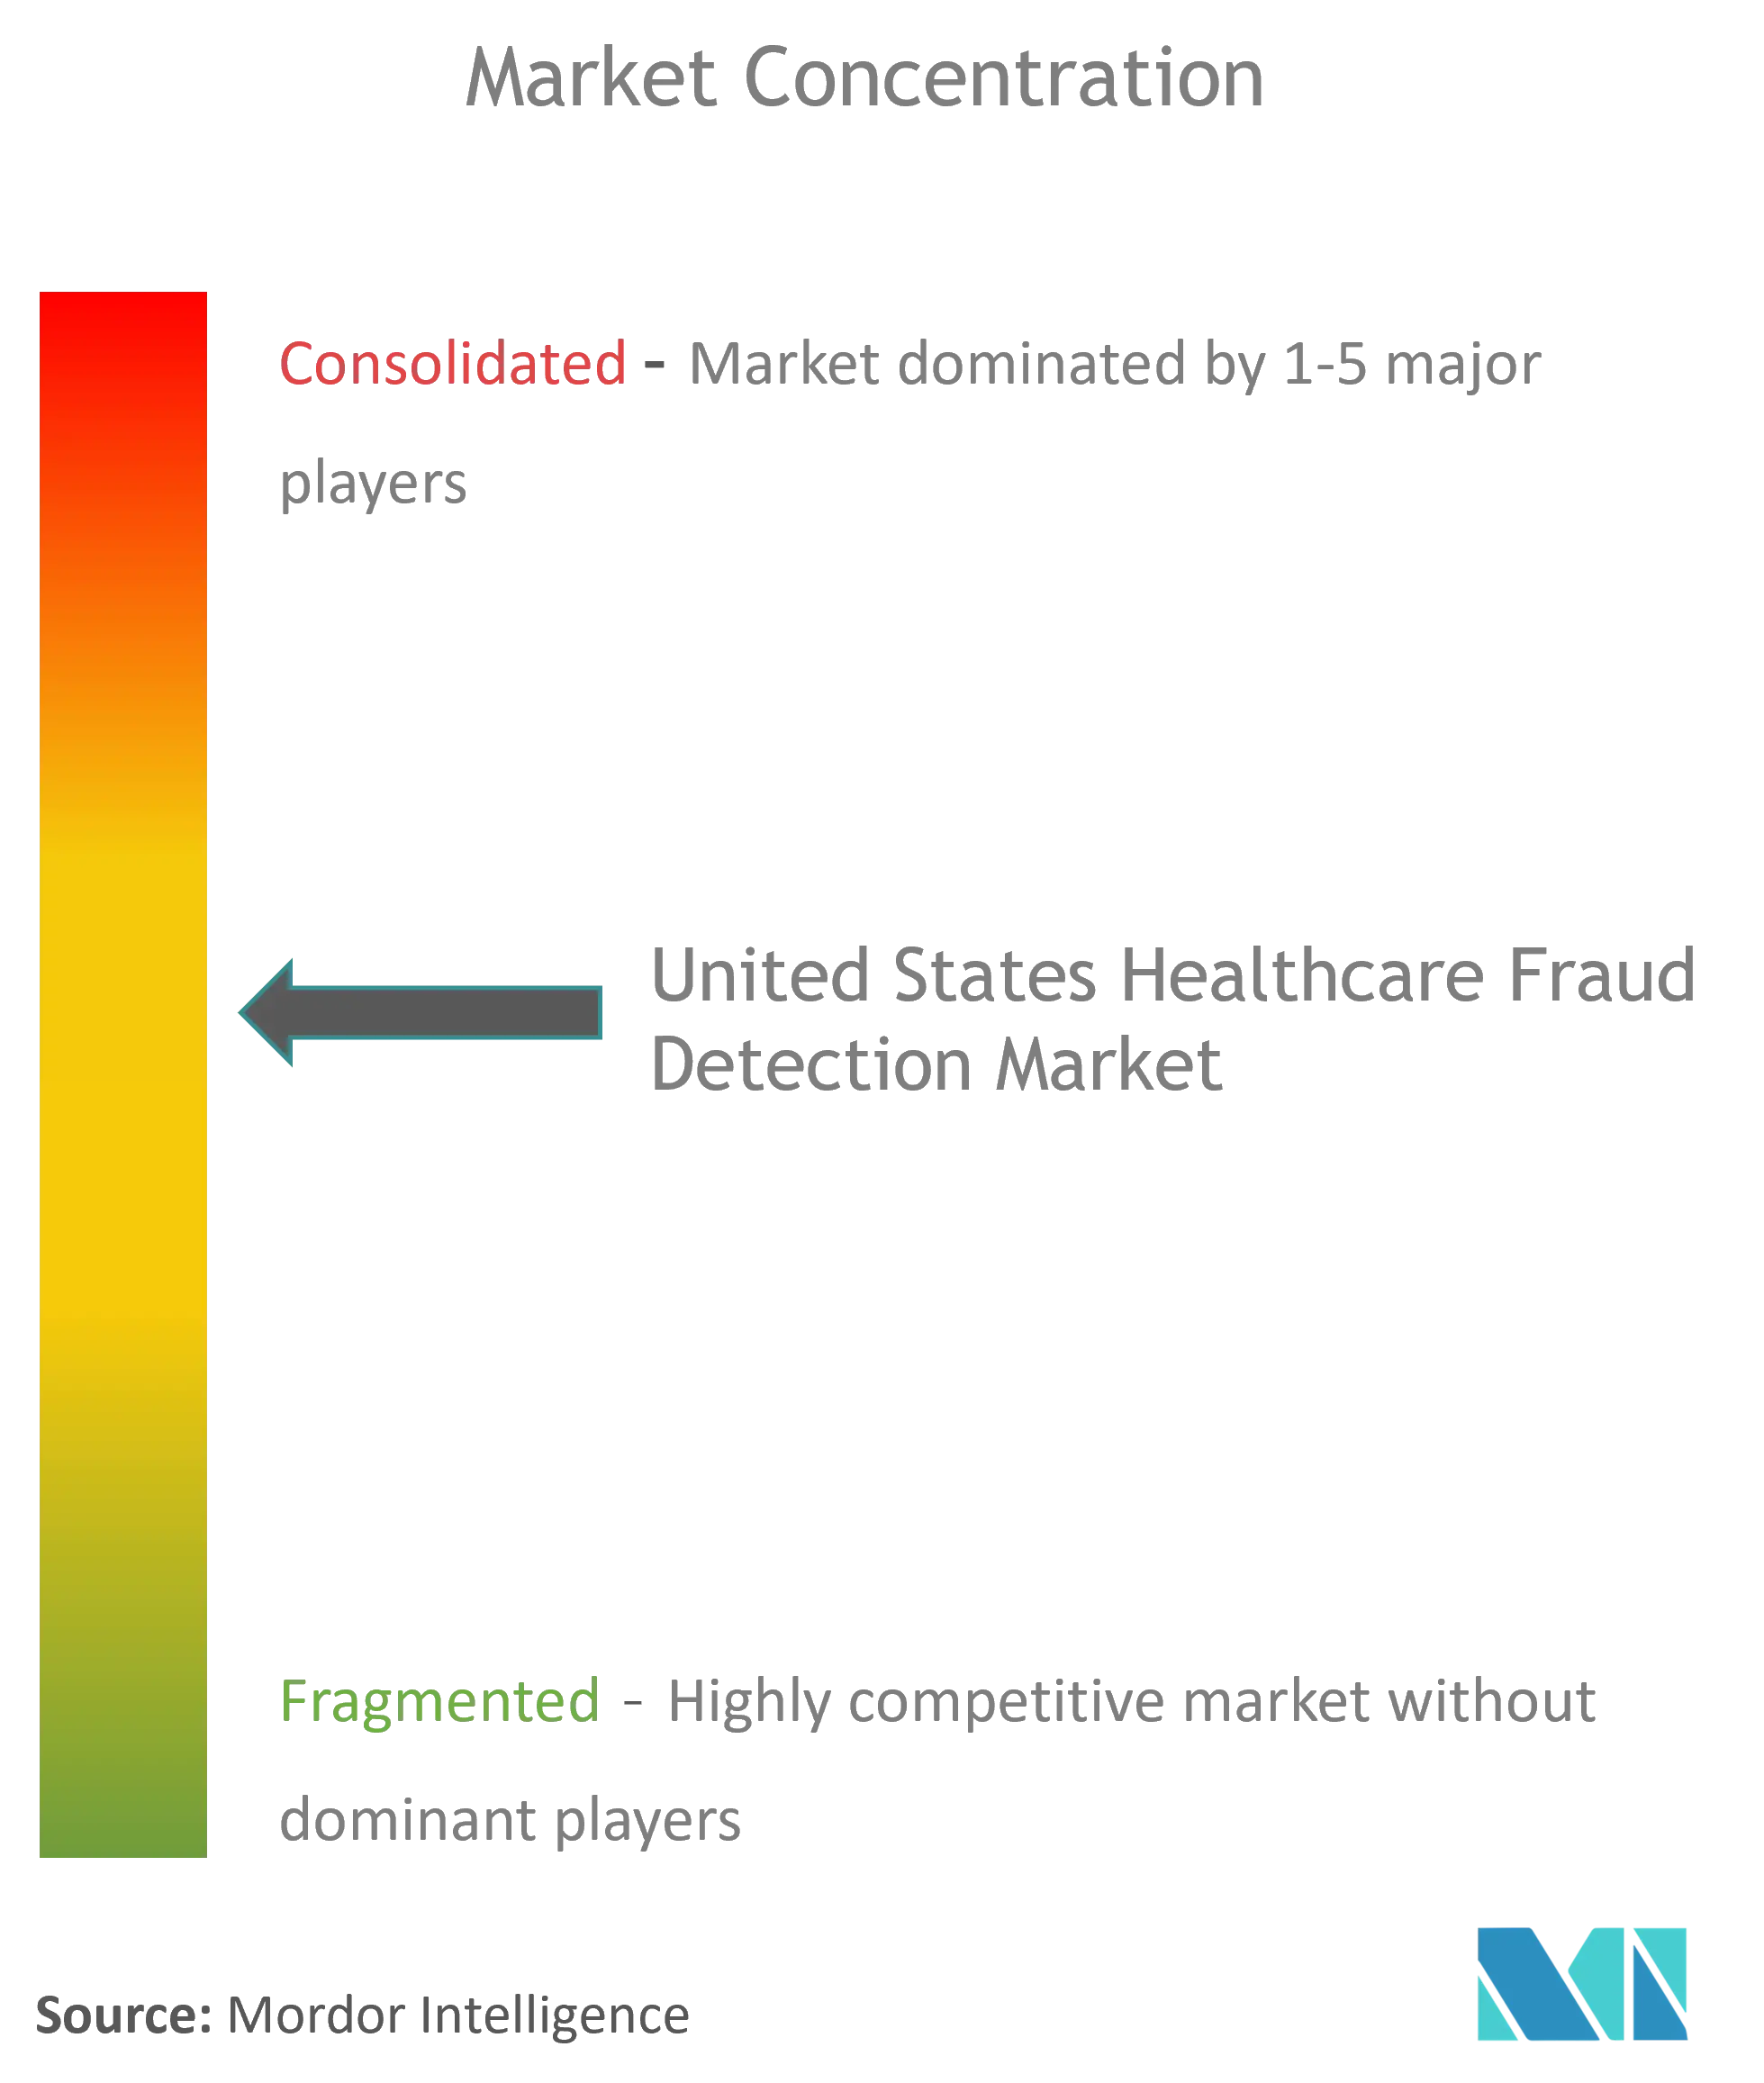 Betrugserkennung im Gesundheitswesen der Vereinigten StaatenMarktkonzentration